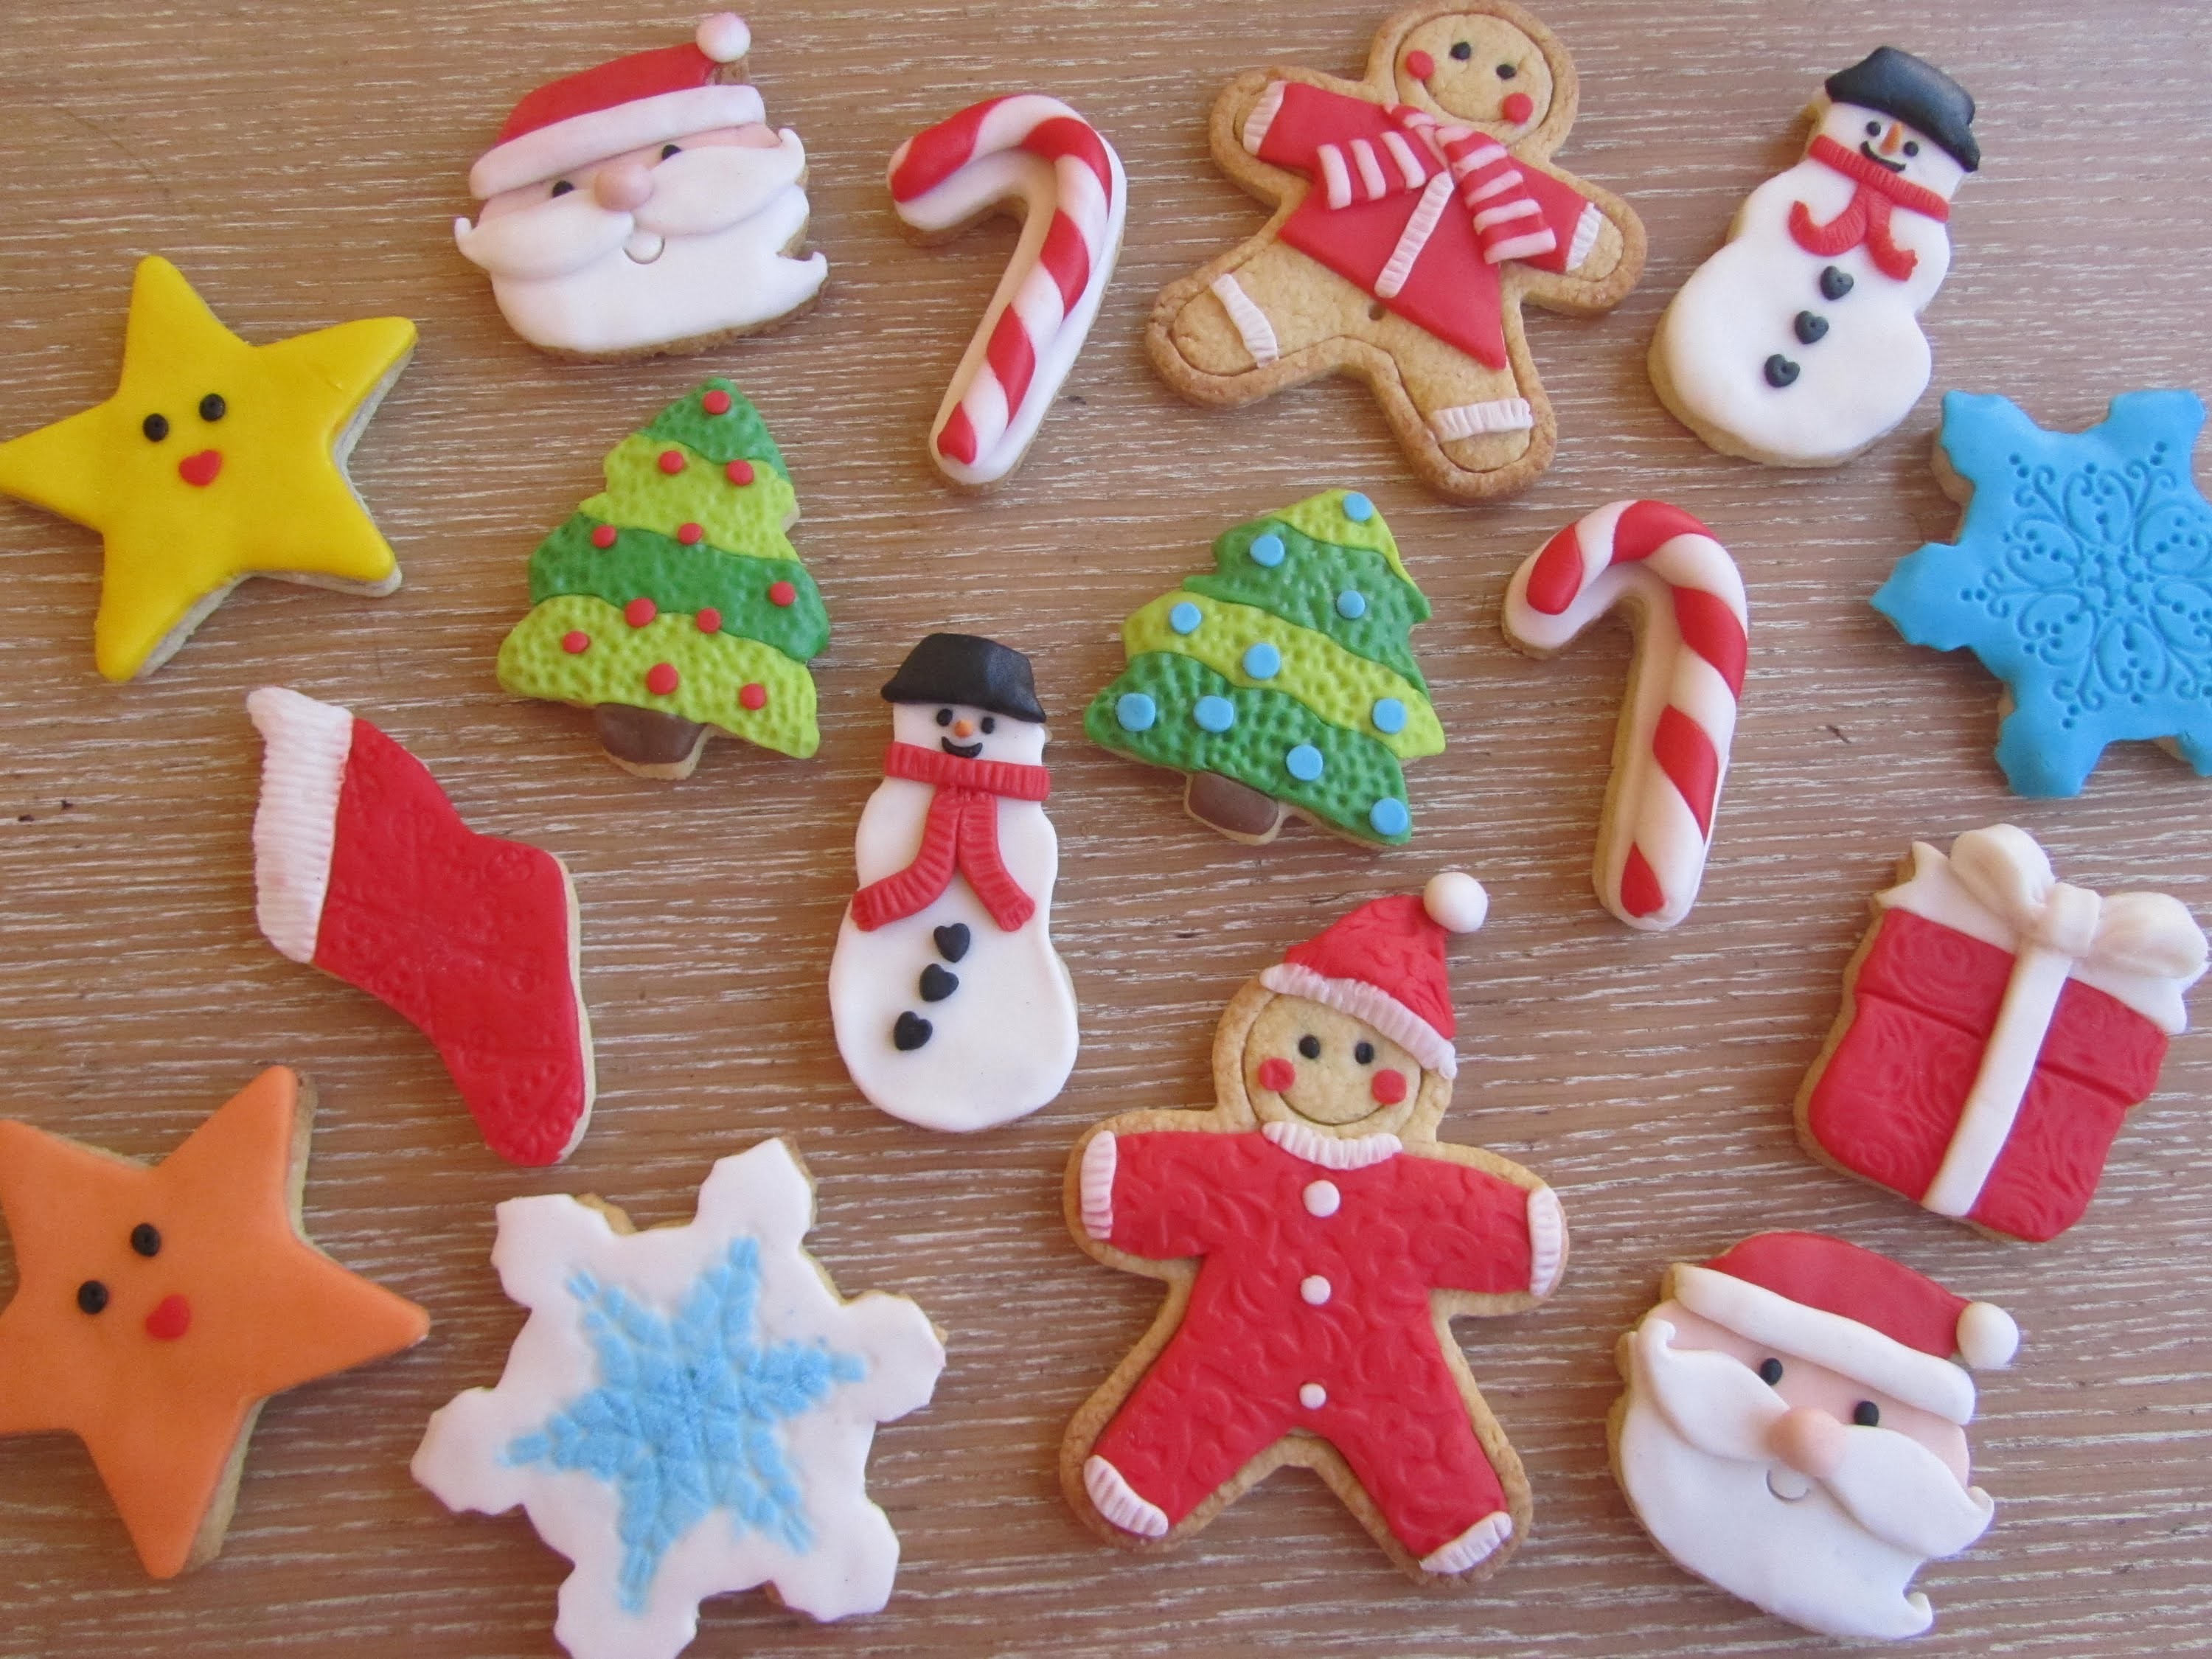 Come decorare dei biscotti di natale, natalizi con pasta di zucchero